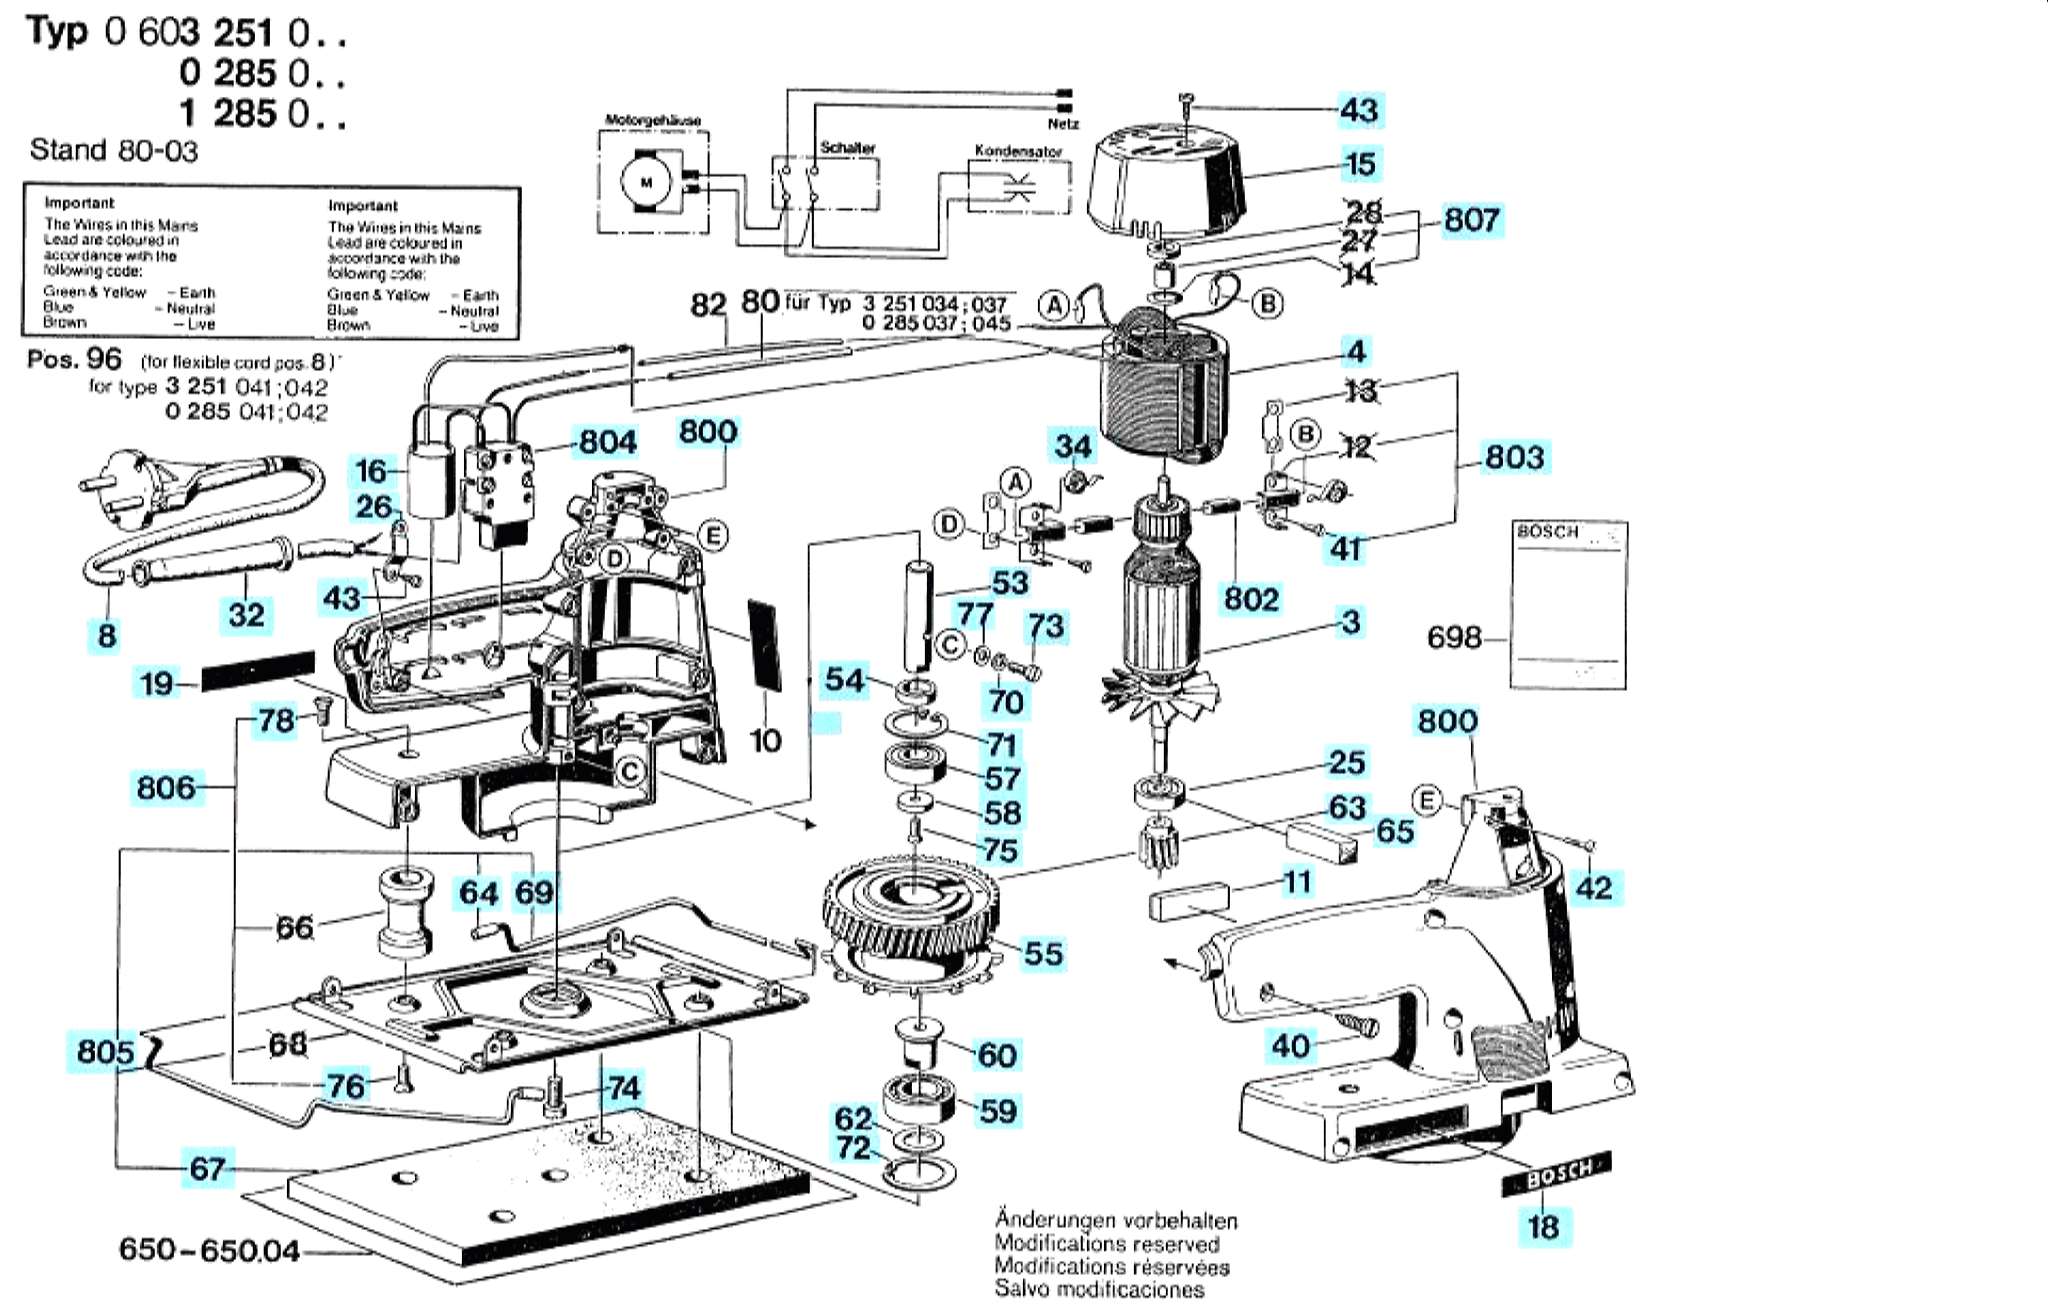 Запчасти, схема и деталировка Bosch (ТИП 0600285003)